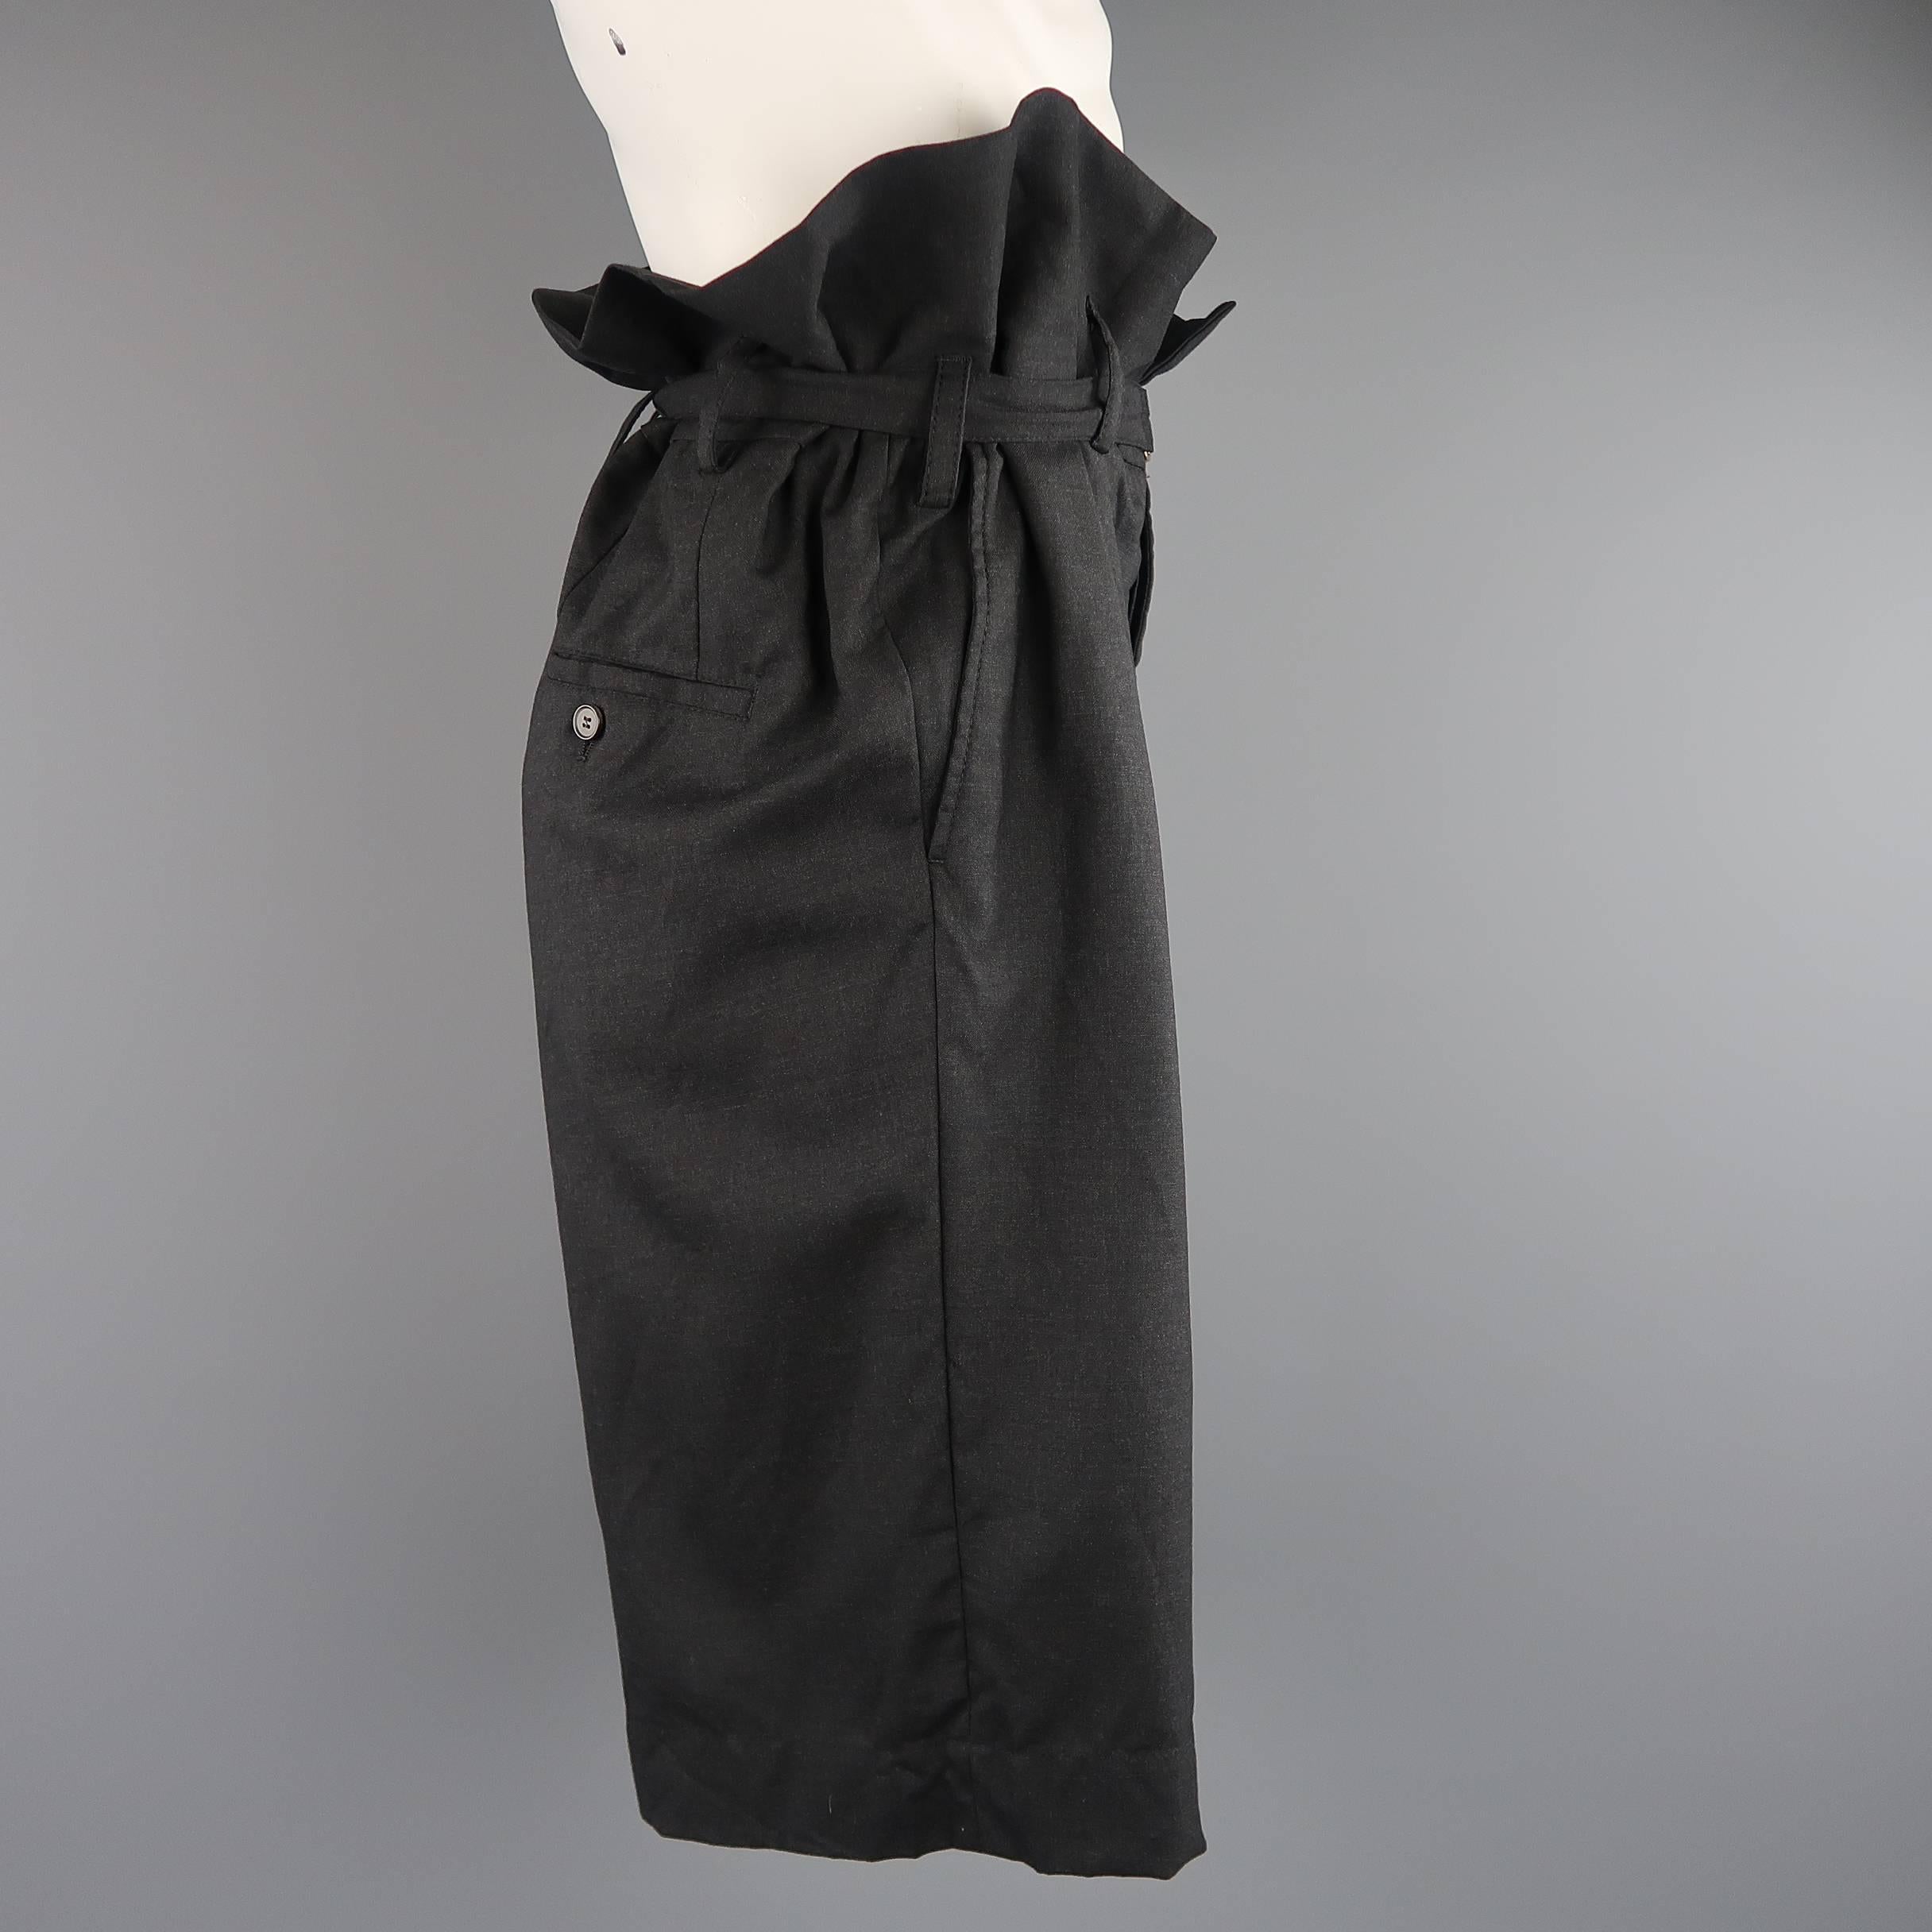 Black Men's MARNI Size 34 Charcoal Wool Oversized Gathered Waist Drop Crotch Shorts